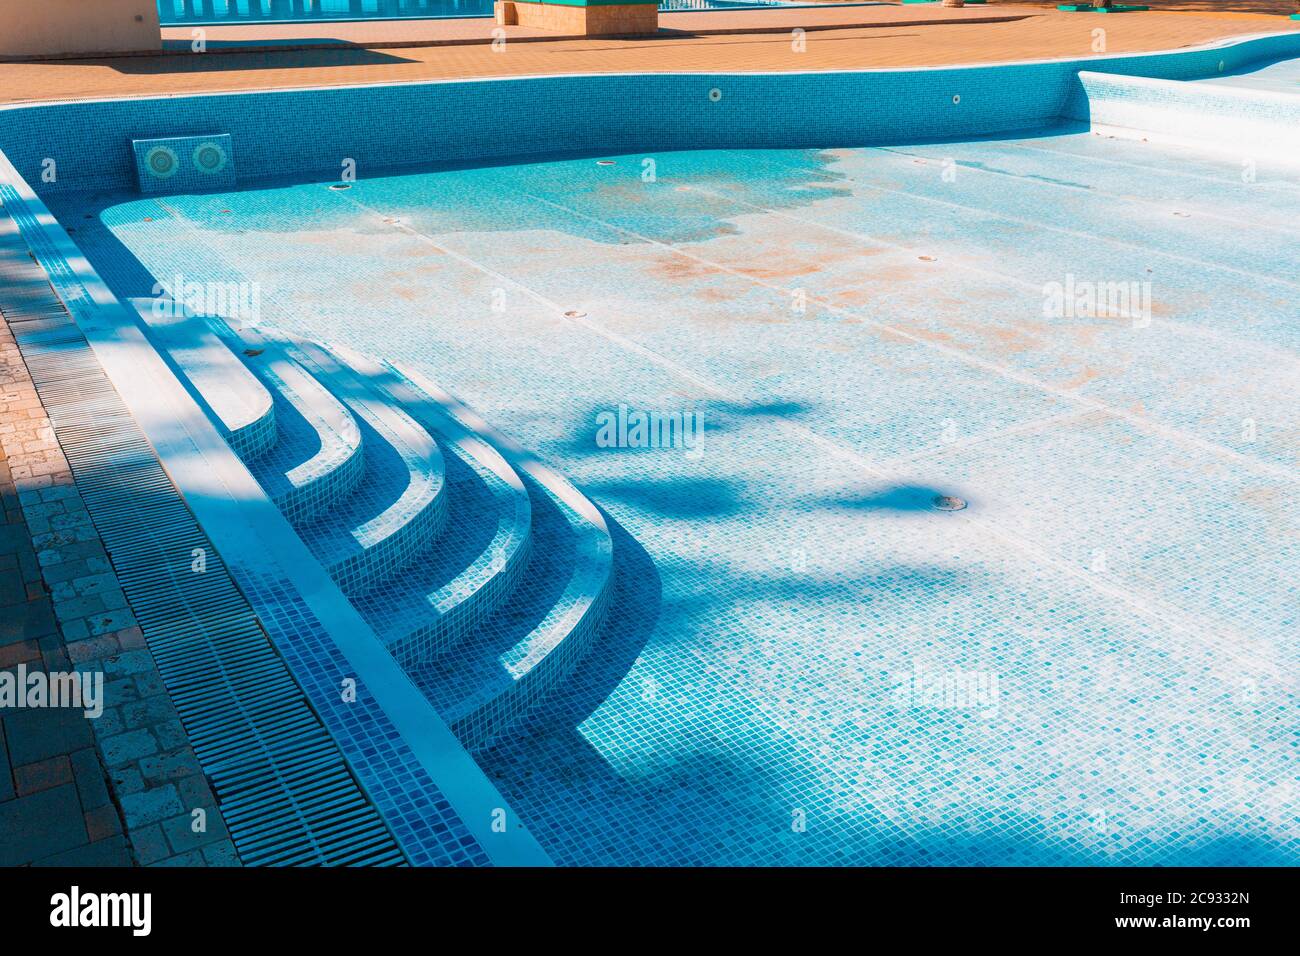 Blauer alter Pool, trocken und schmutzig am Boden. Speicherplatz kopieren. Konzept der Wartung und Reinigung von Schwimmbädern. Stockfoto